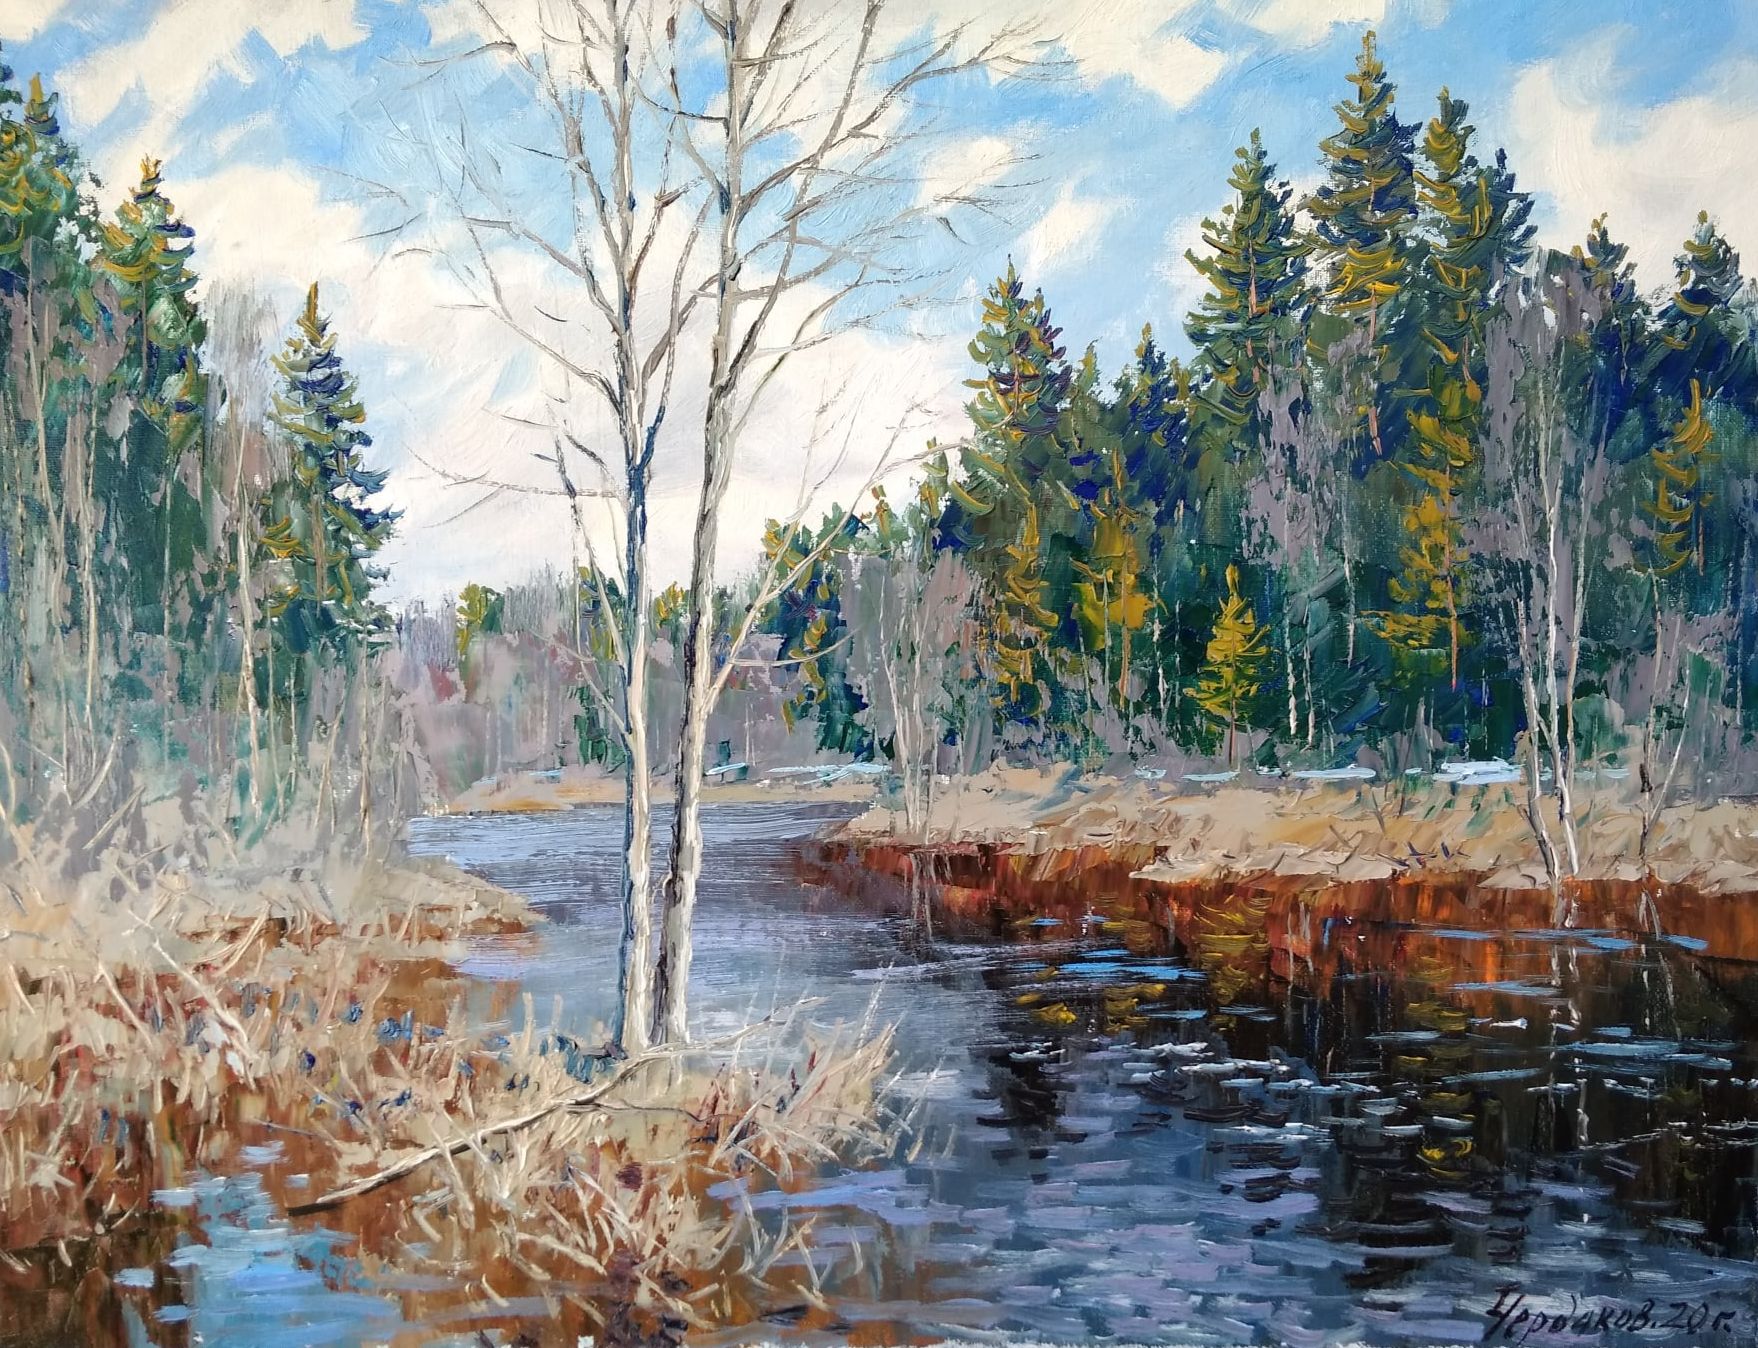 Flood - 1, Vyacheslav Cherdakov, Buy the painting Oil